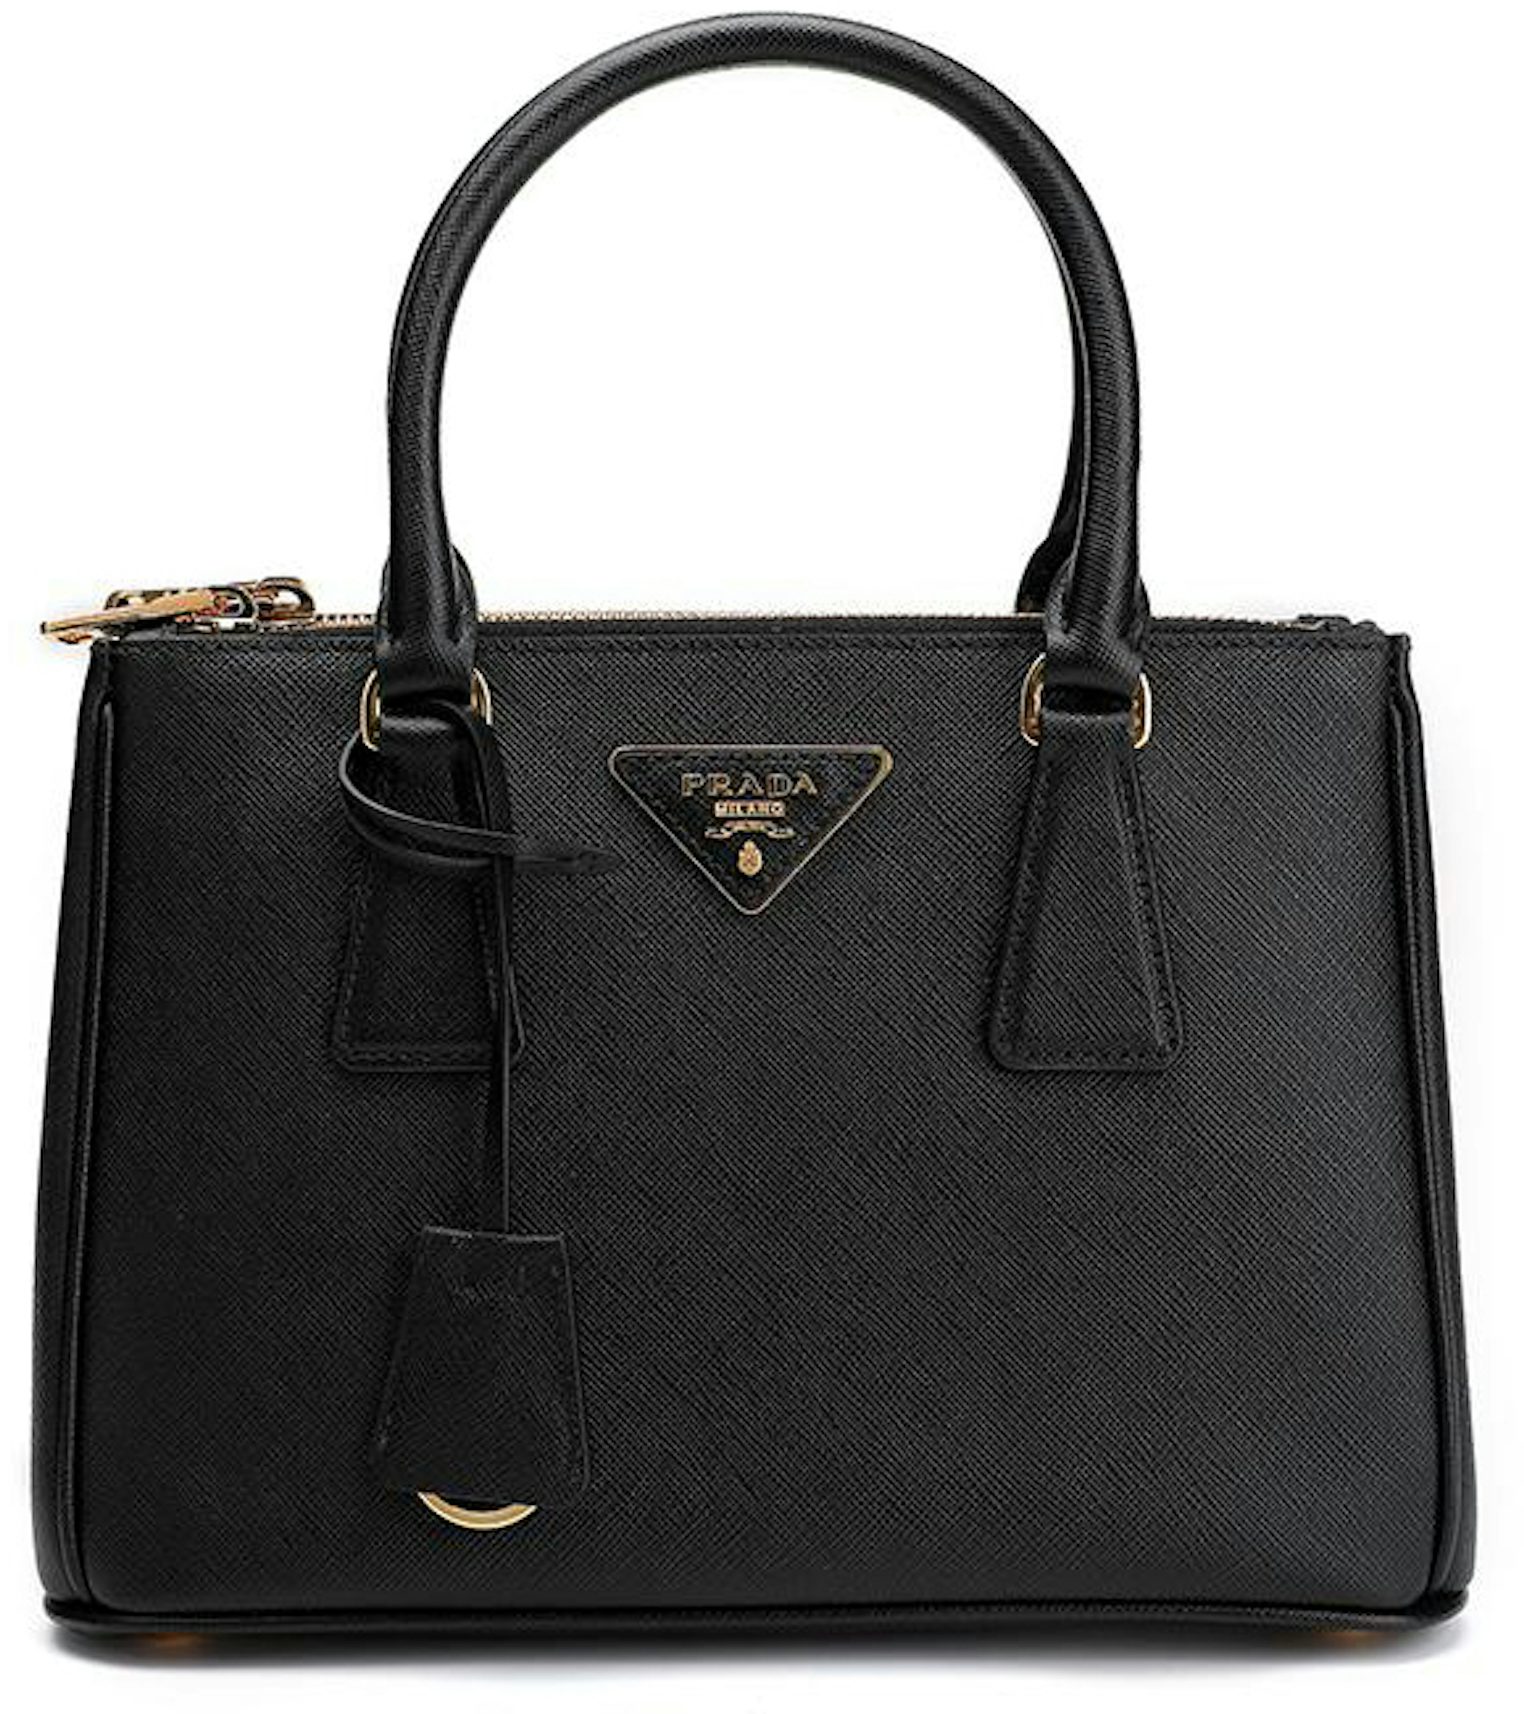 PRADA Galleria Medium Saffiano Leather Tote Bag Black-US